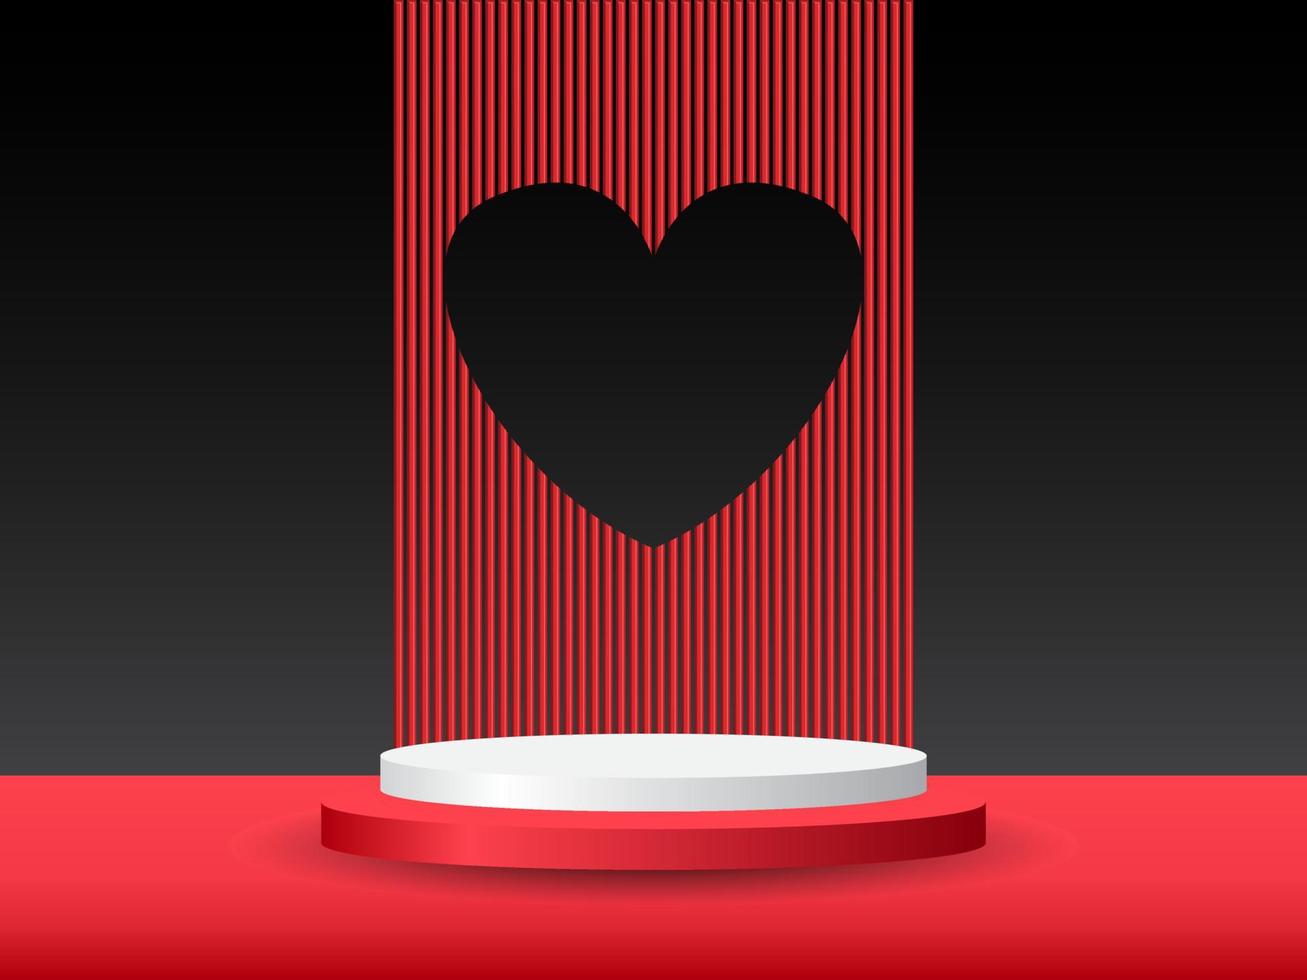 pódio de pedestal de cilindro 3d vermelho e branco realista com fundo de forma de coração de janela. cena mínima dos namorados para vitrine de produtos, exibição de promoção. design de plataforma de sala de estúdio abstrato vetorial vetor